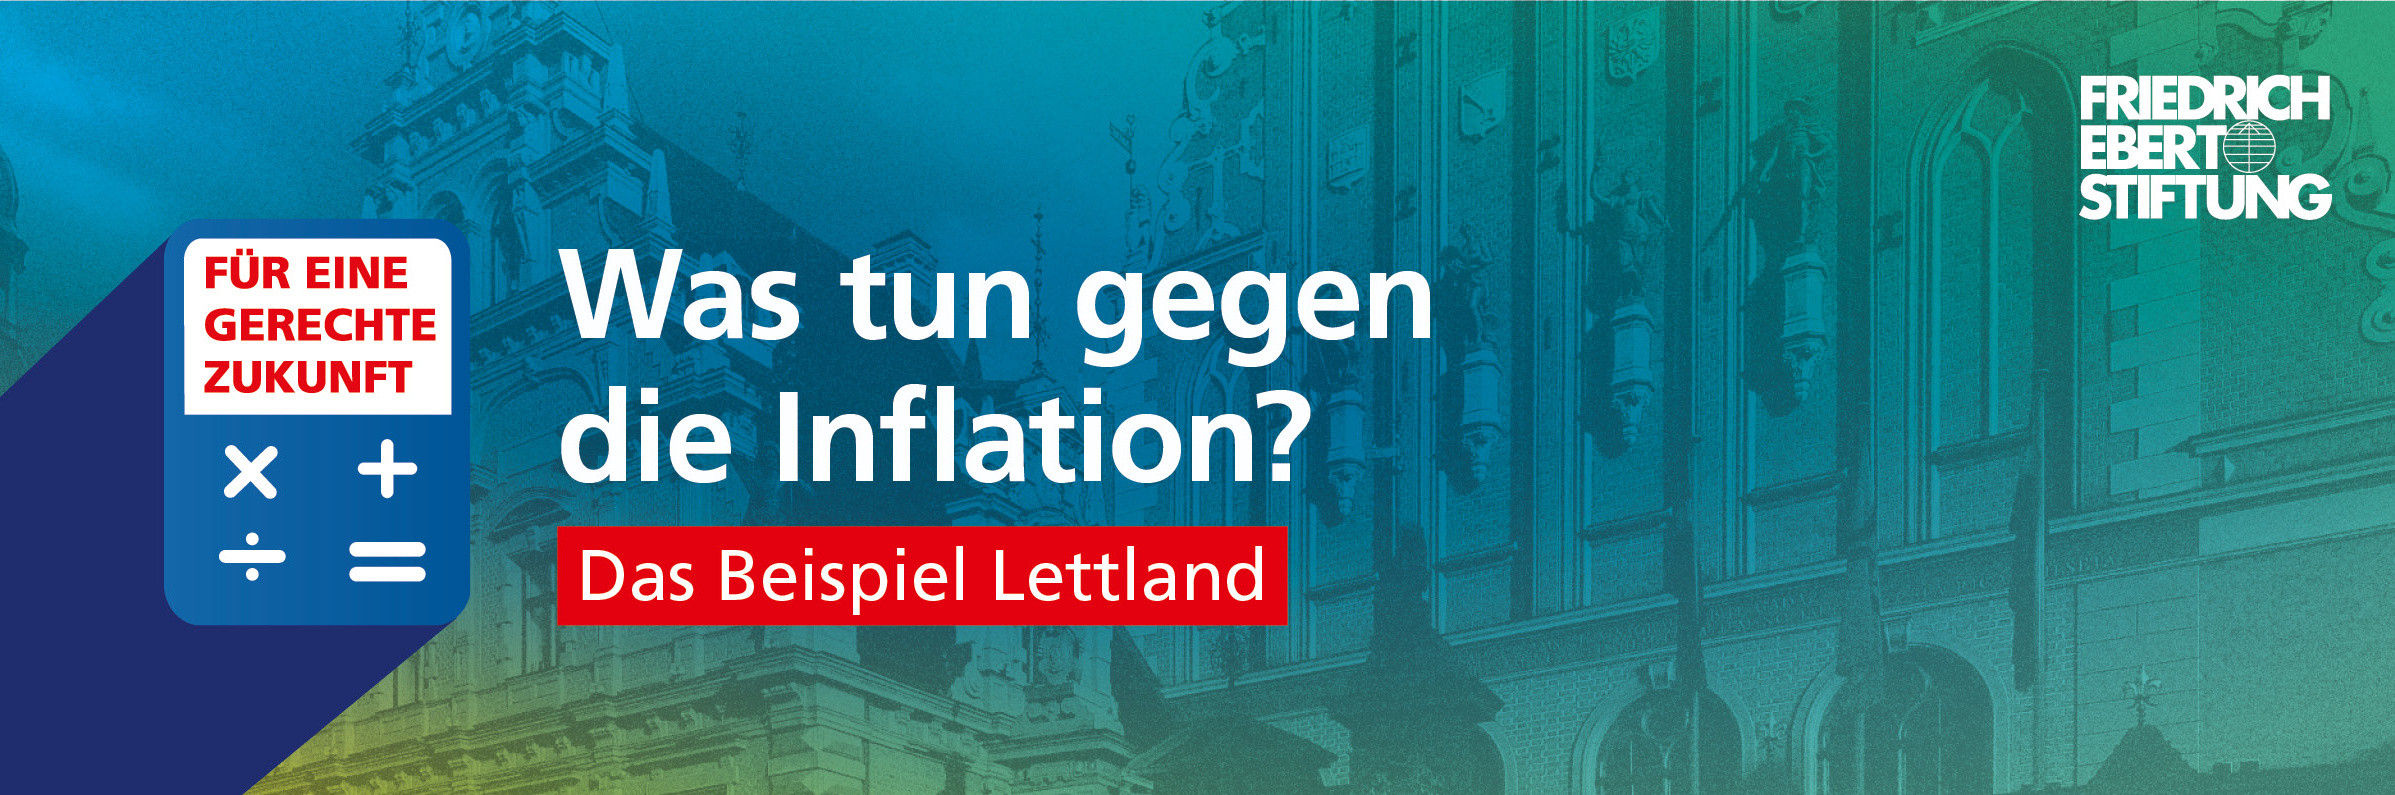 Blau-grün-gelb verwischter Hintergrund. Darauf der weiße Schriftzug "Was tun gegen die Inflation? Das Beispiel Lettland".